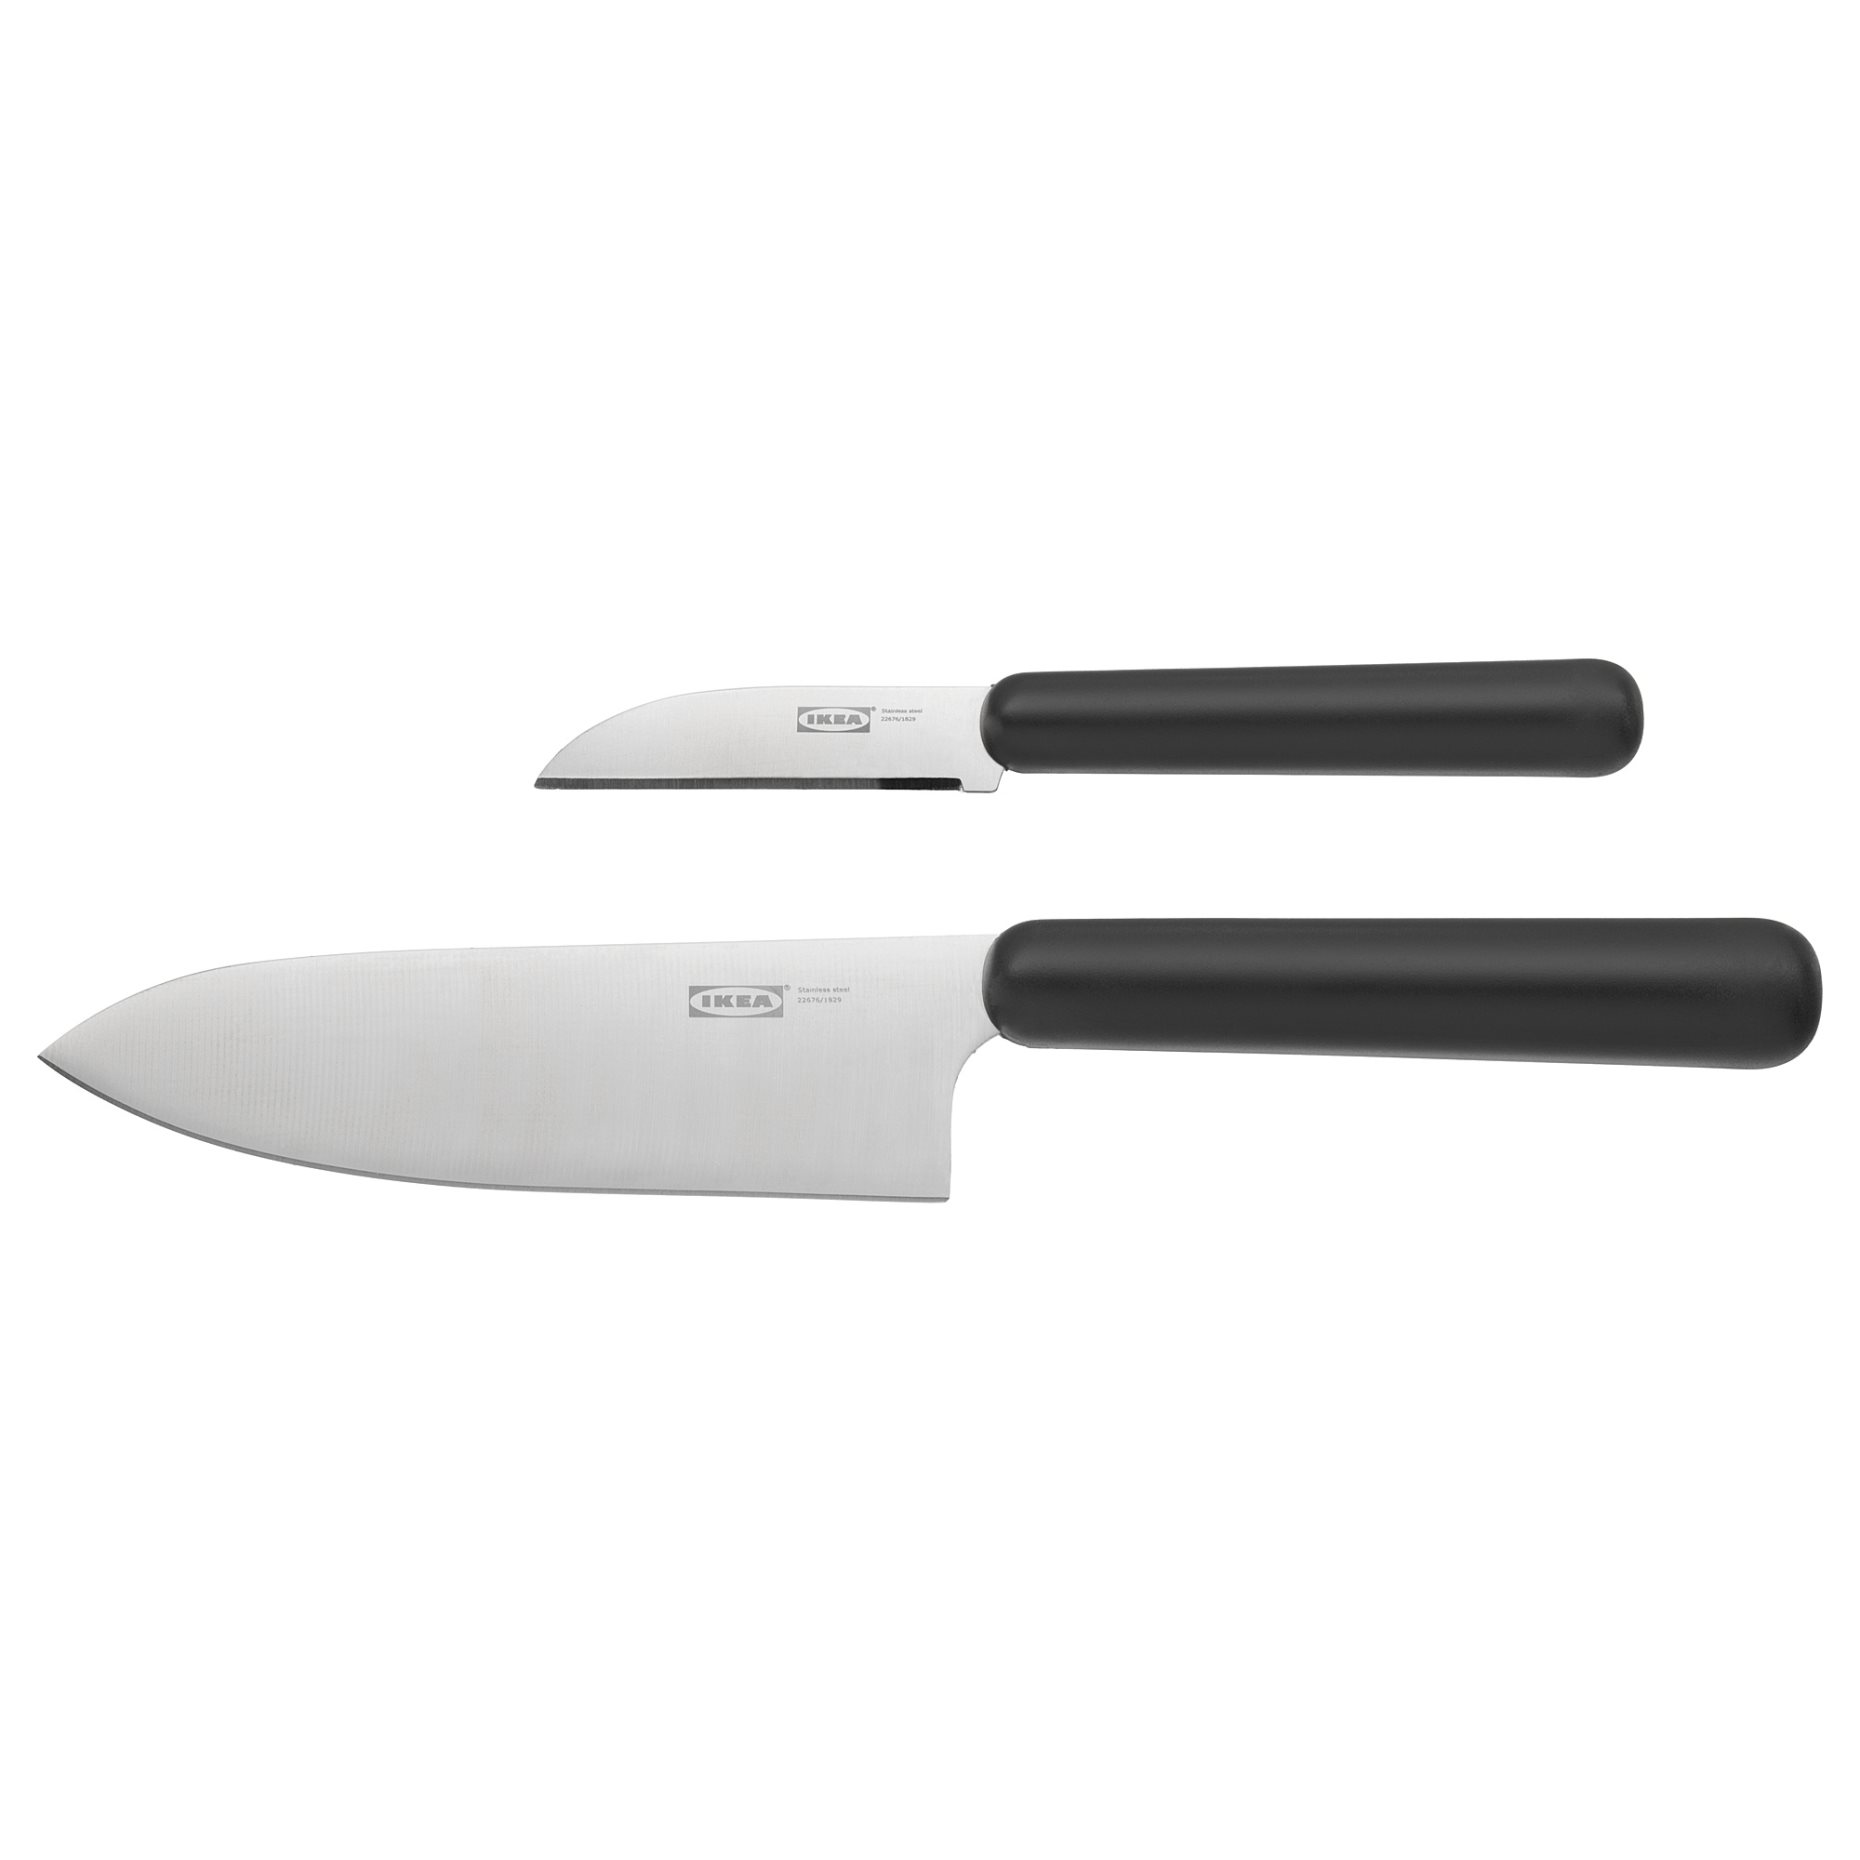 FÖRDUBBLA, 2-piece knife set, 004.367.90